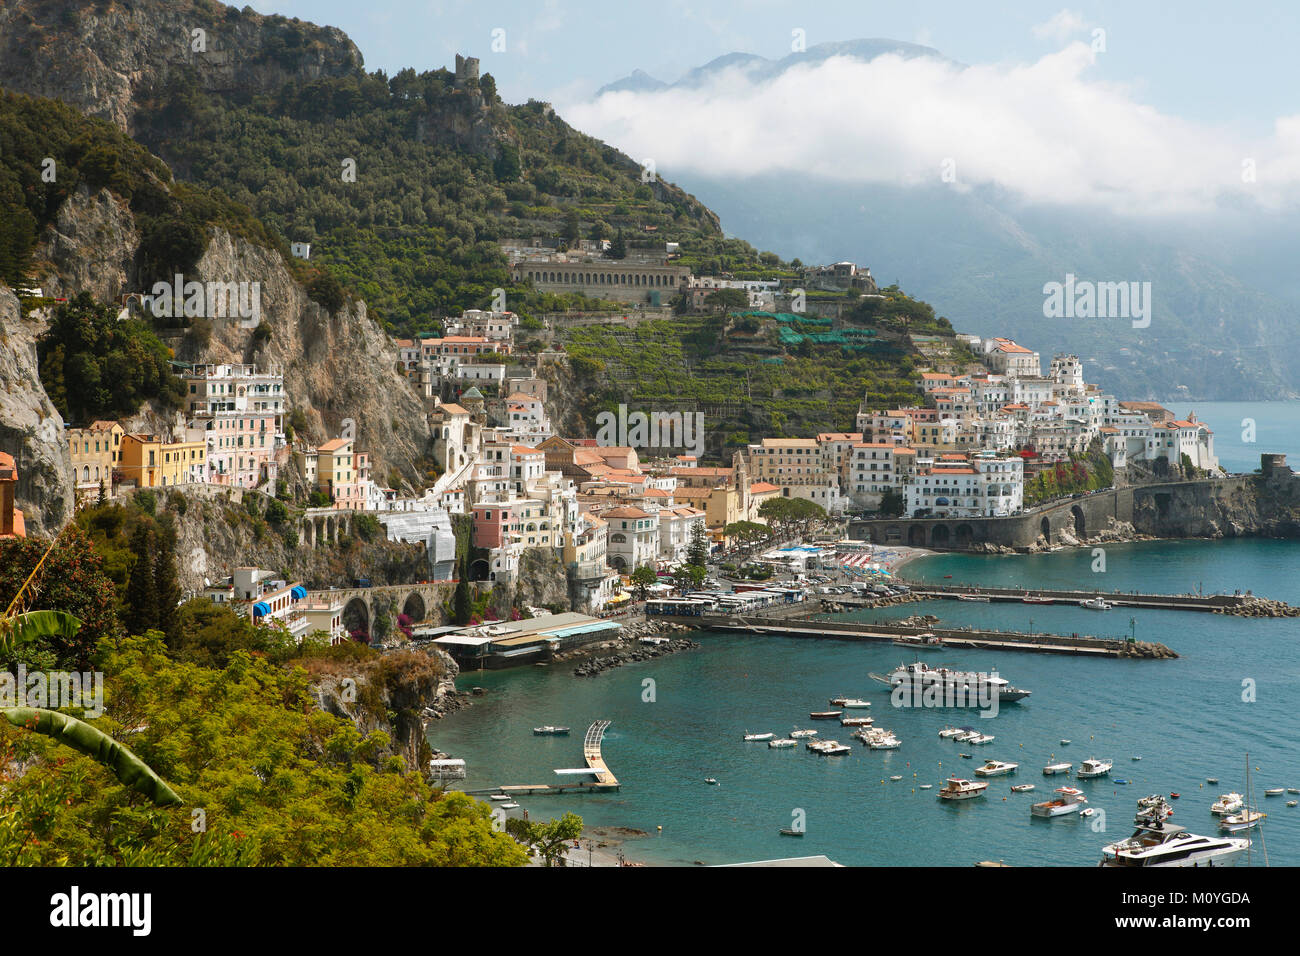 Blick auf die Stadt Amalfi, Amalfiküste, Golf von Salerno, Kampanien,  Italien Stockfotografie - Alamy